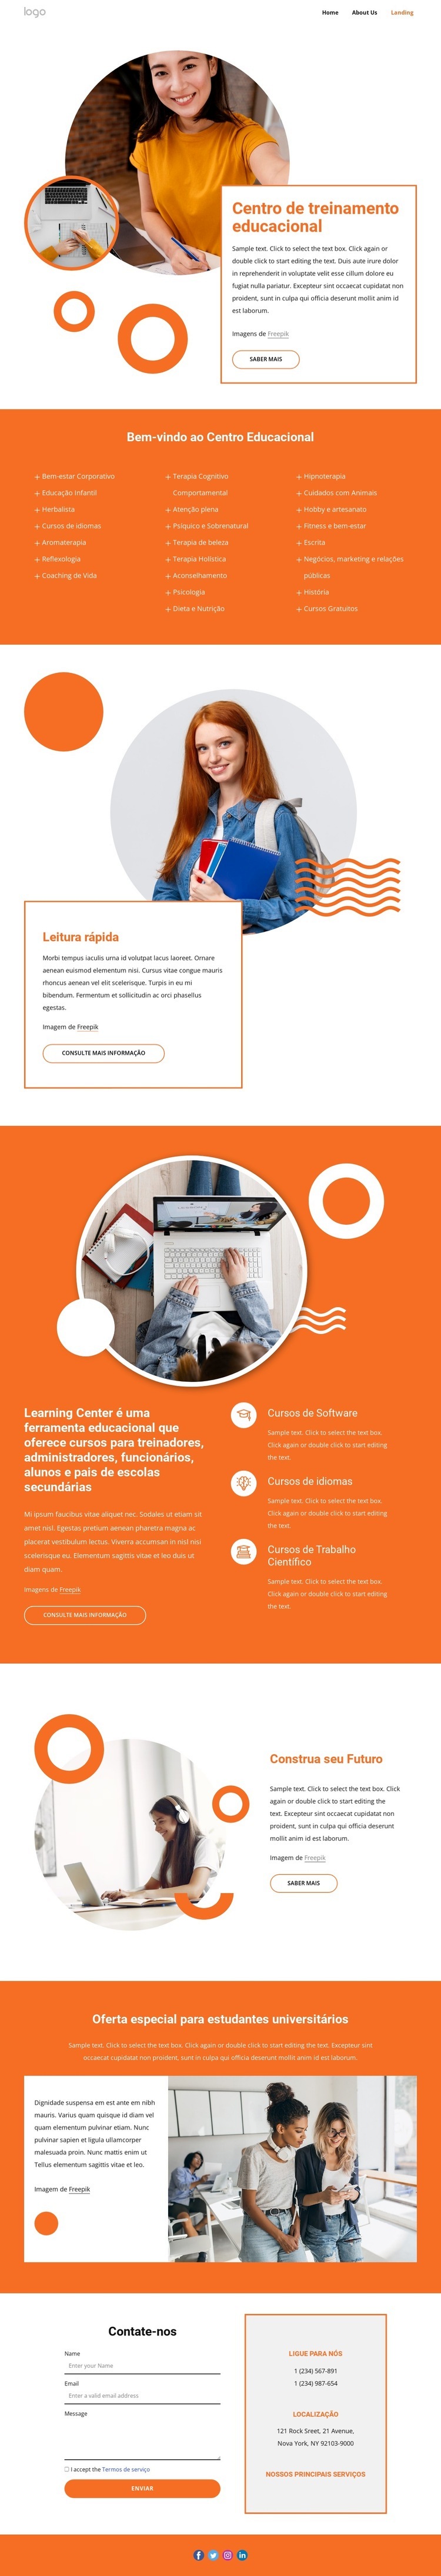 Centro de treinamento educacional Design do site